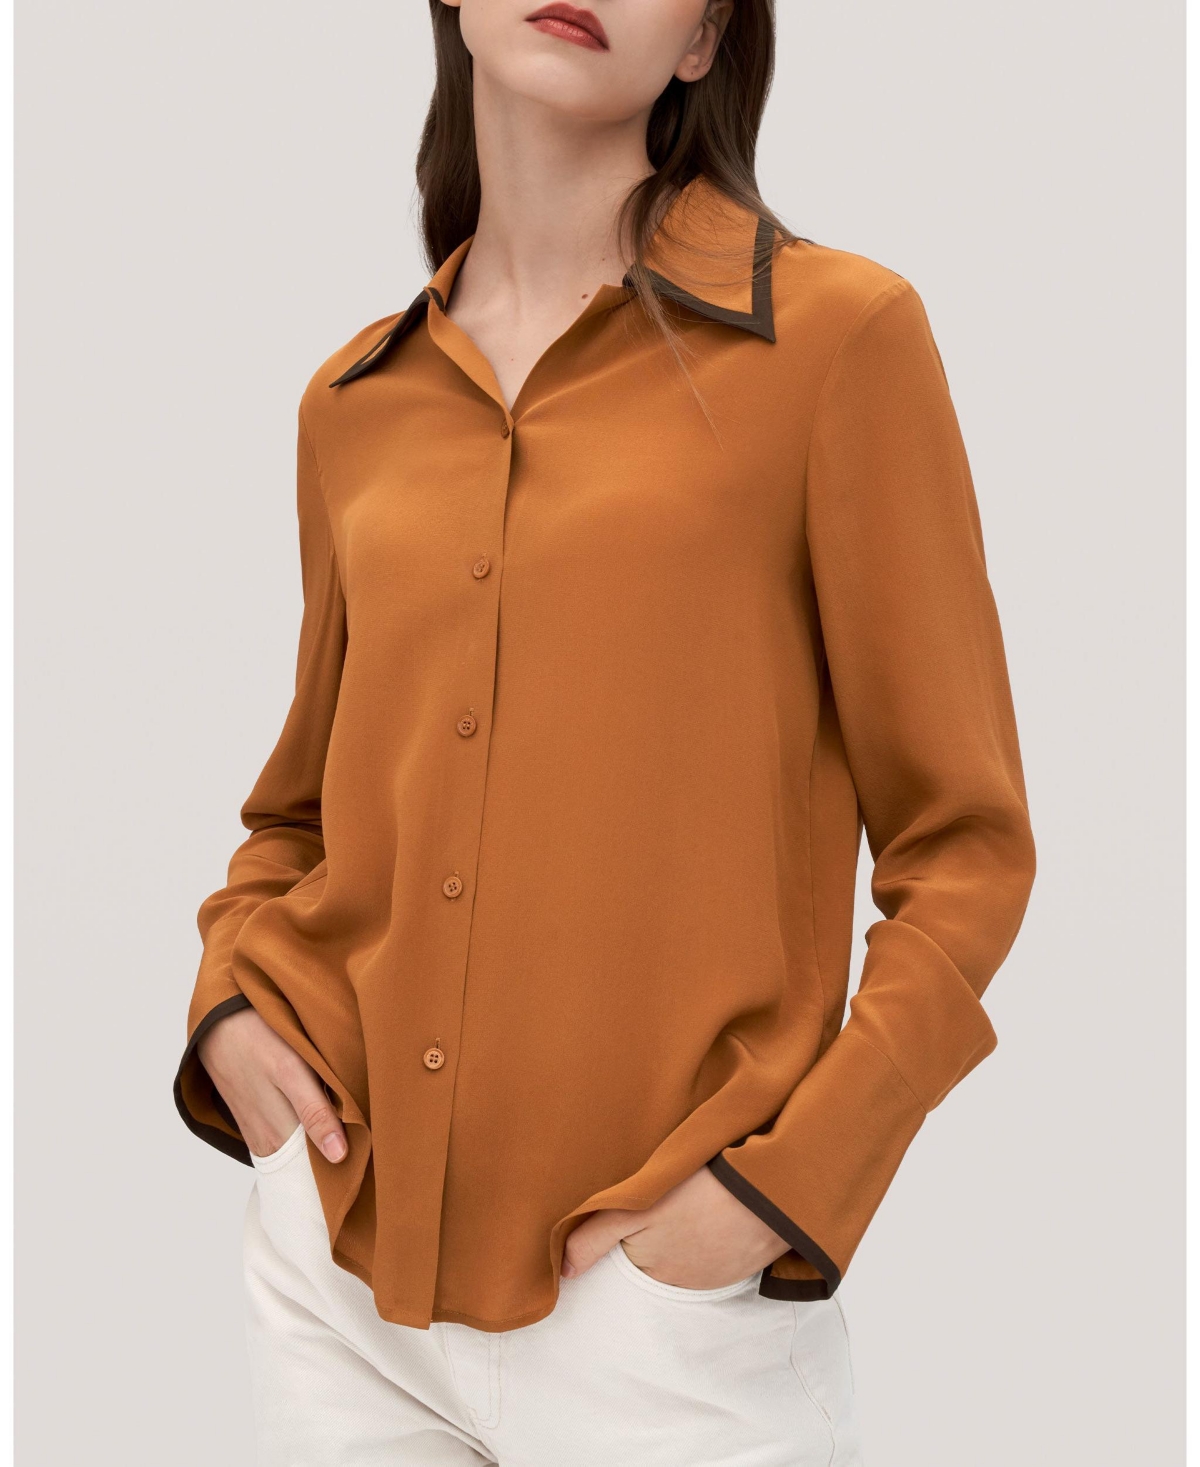 Women's Contrast Piping Silk Willow Shirt for Women - Dark caramel